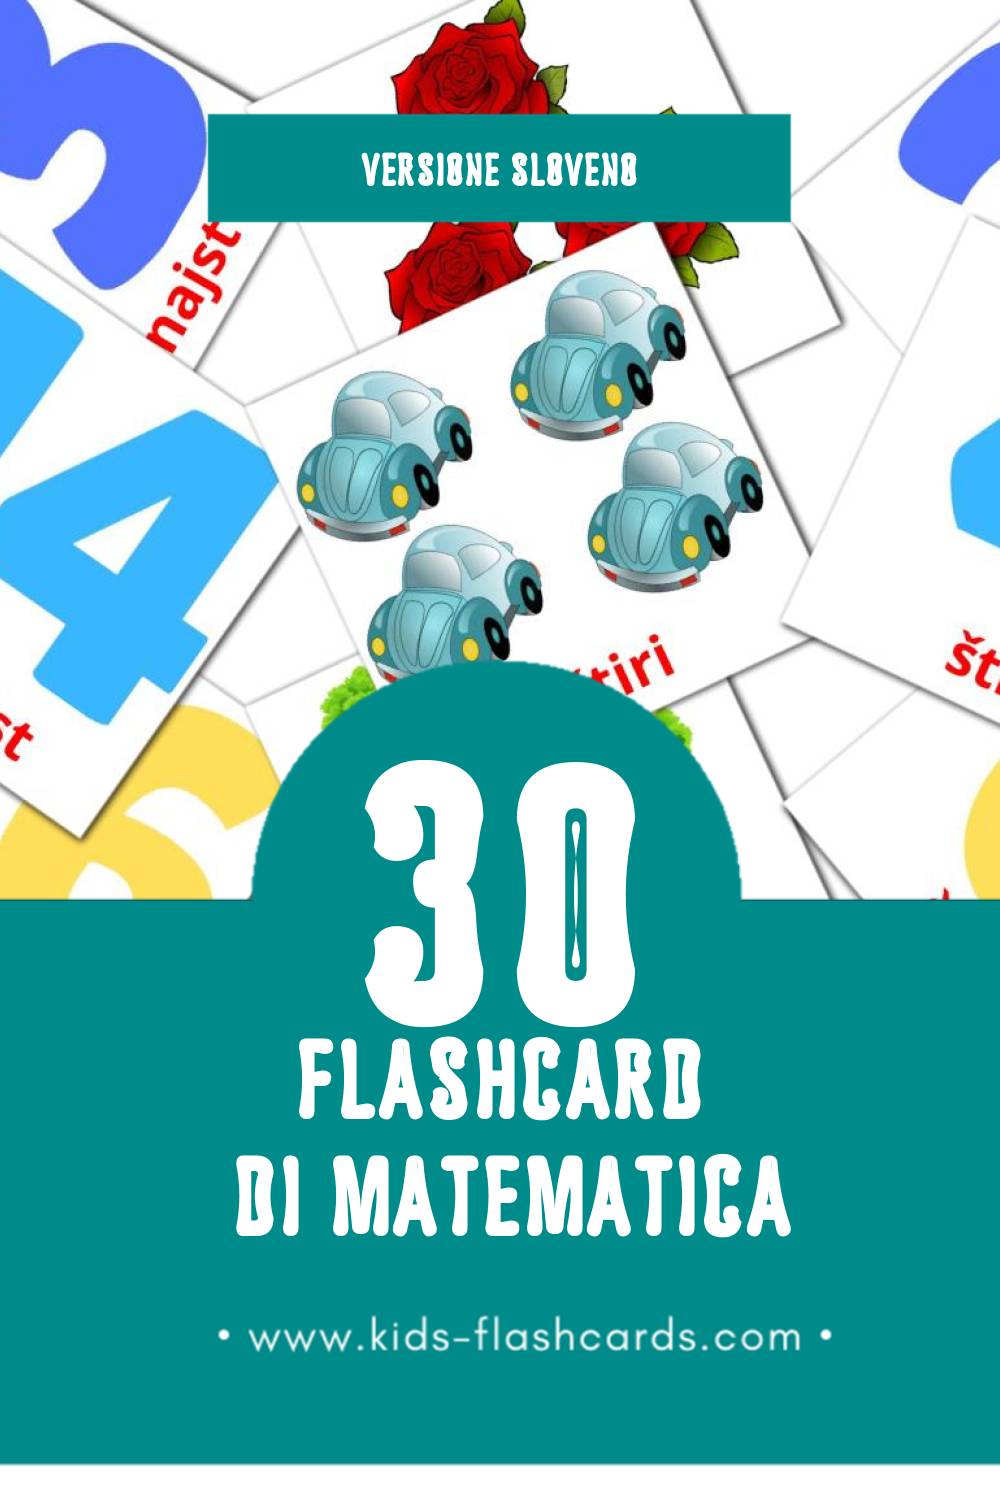 Schede visive sugli Matematika per bambini (30 schede in Sloveno)